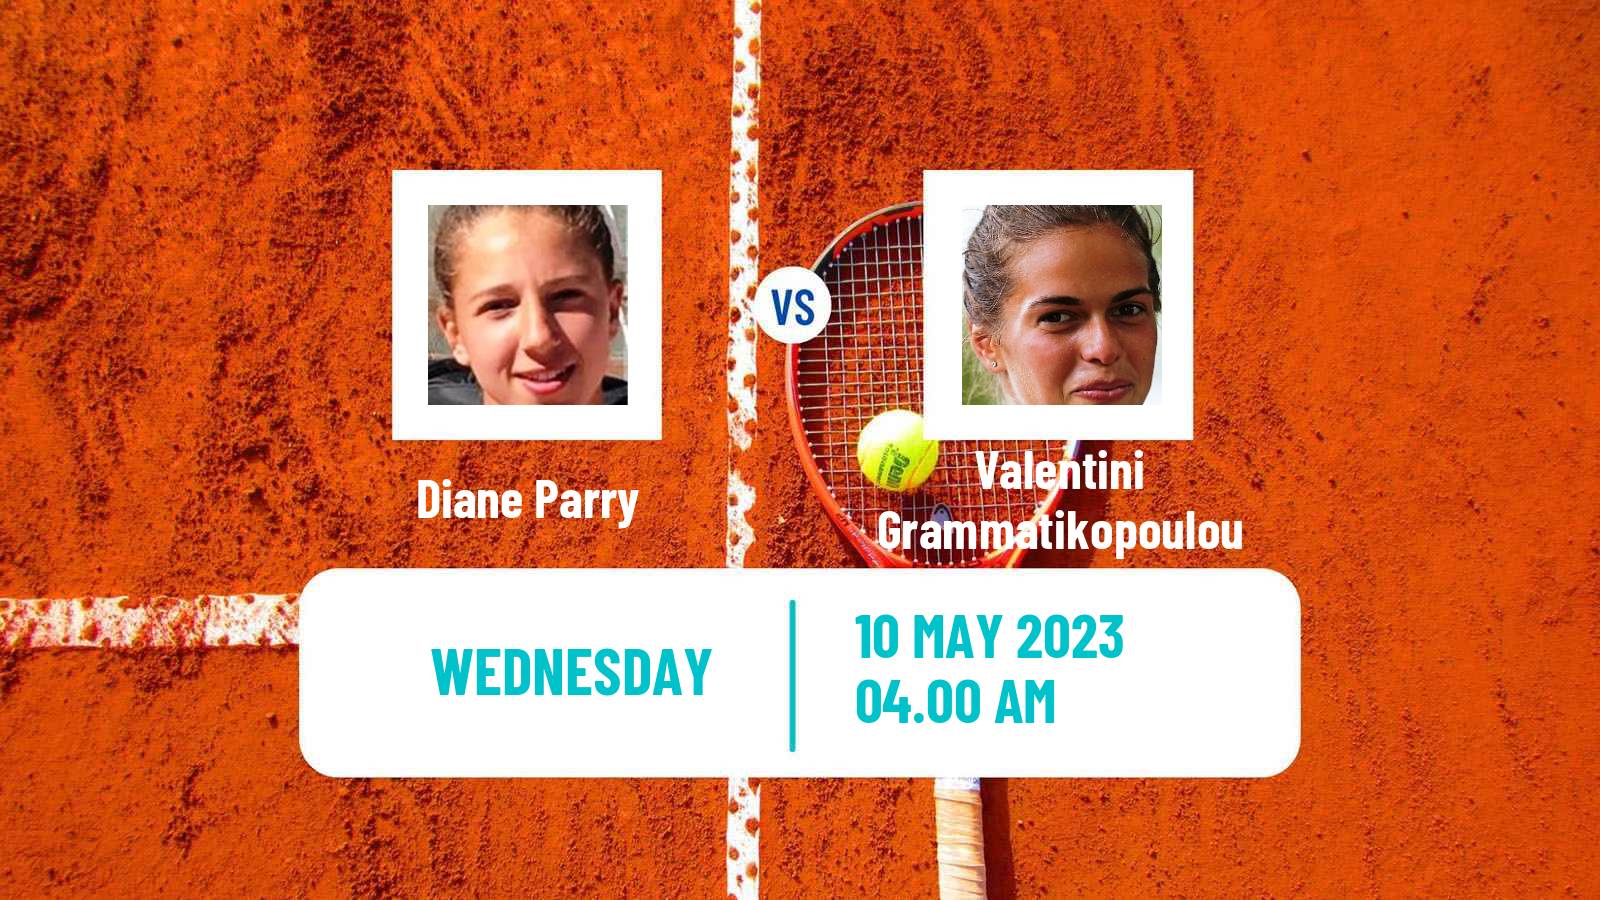 Tennis ITF Tournaments Diane Parry - Valentini Grammatikopoulou